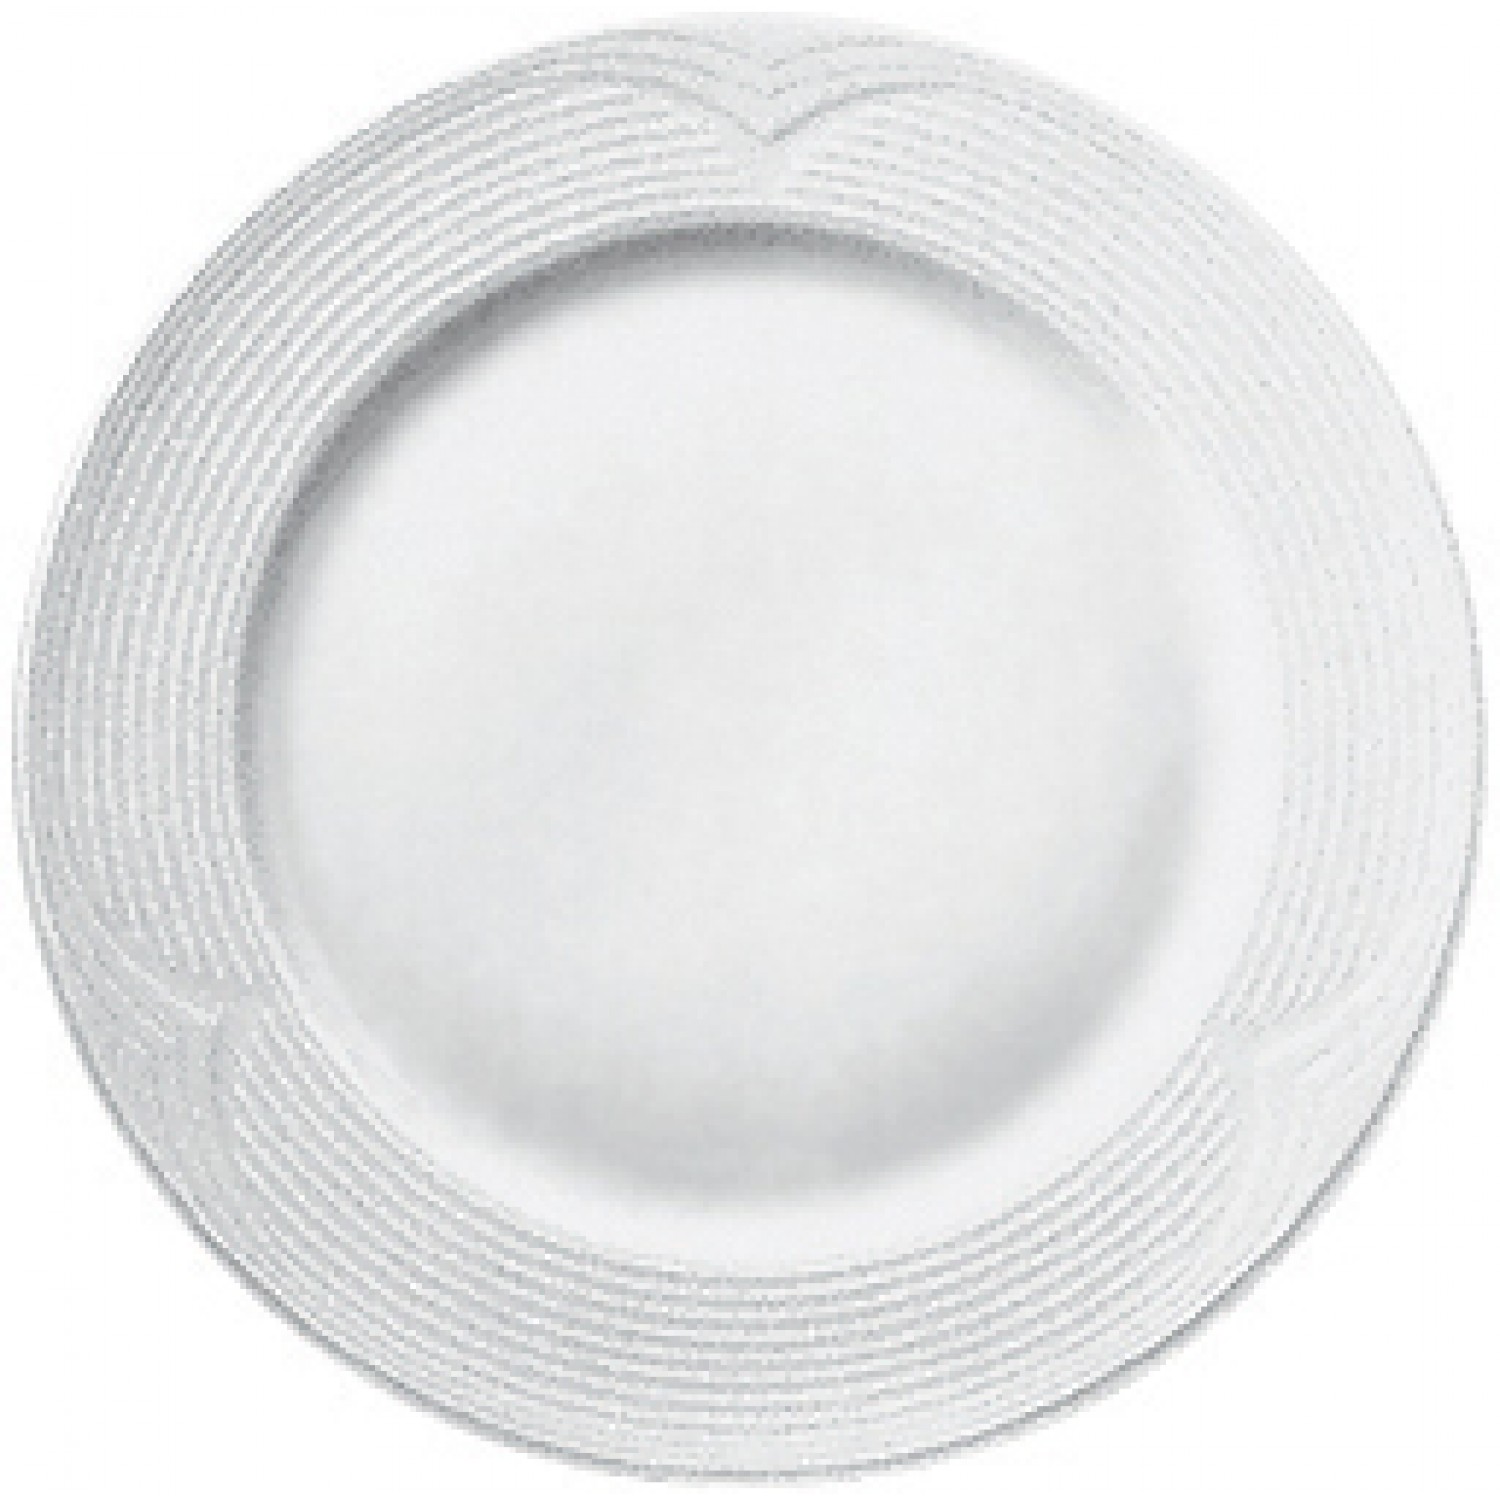 Πιάτο Ρηχό Στρογγυλό 18cm Άσπρο Πορσελάνης Saturn Gural 52.52500